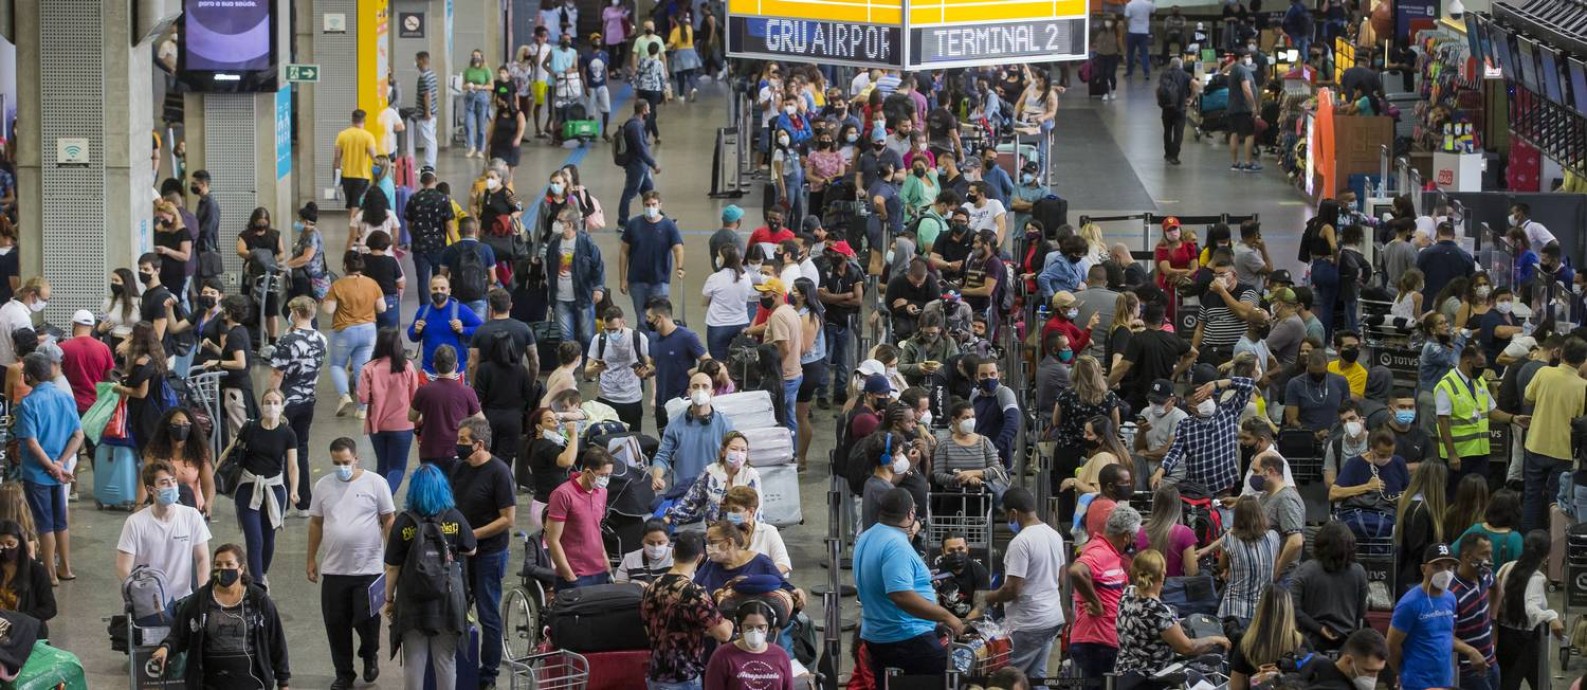 Passageiros que tentaram embarcar no Aeroporto Internacional de Guarulhos, na Grande São Paulo, no fim de semana enfrentaram filas e atrasos em alguns voos. A suspensão de voos da ITA, do grupo Itapemirim, foi uma das principais causas Foto: Edilson Dantas / Agência O Globo